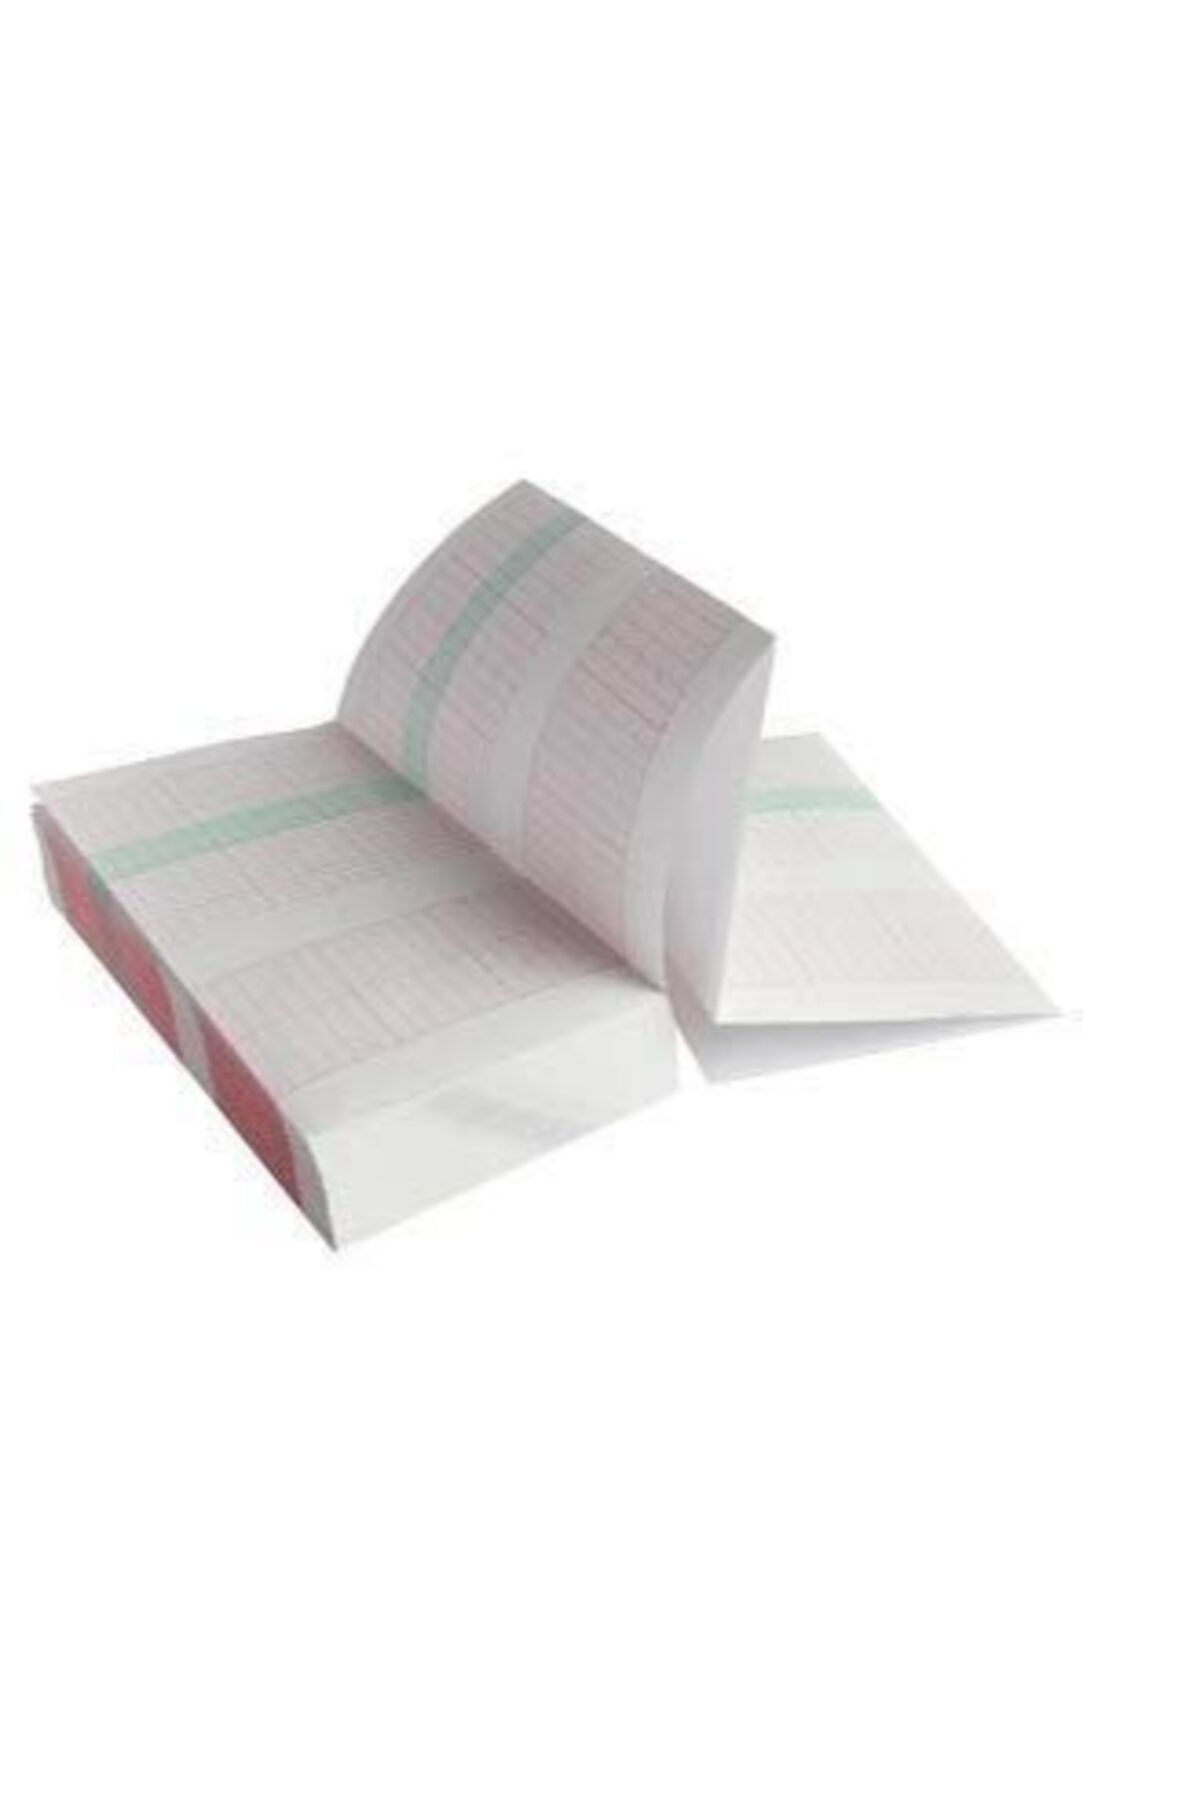 Umur Nst Yazıcı Kağıdı, Bistos Bt-350 ,10 Lu Paket